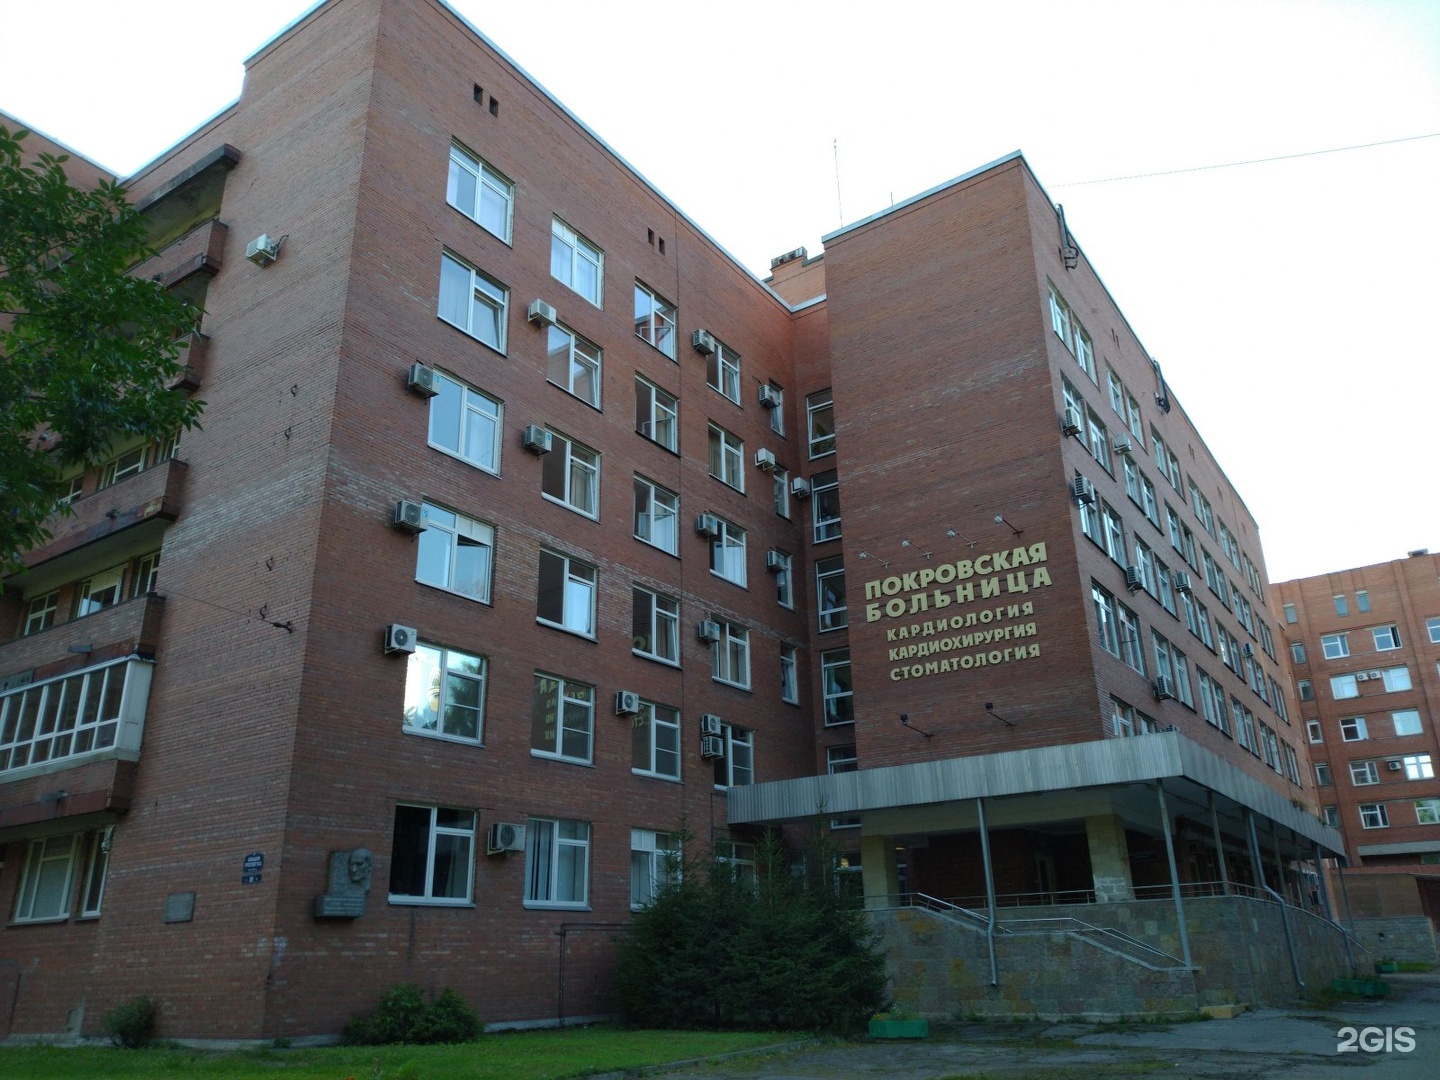 Покровская больница рузский